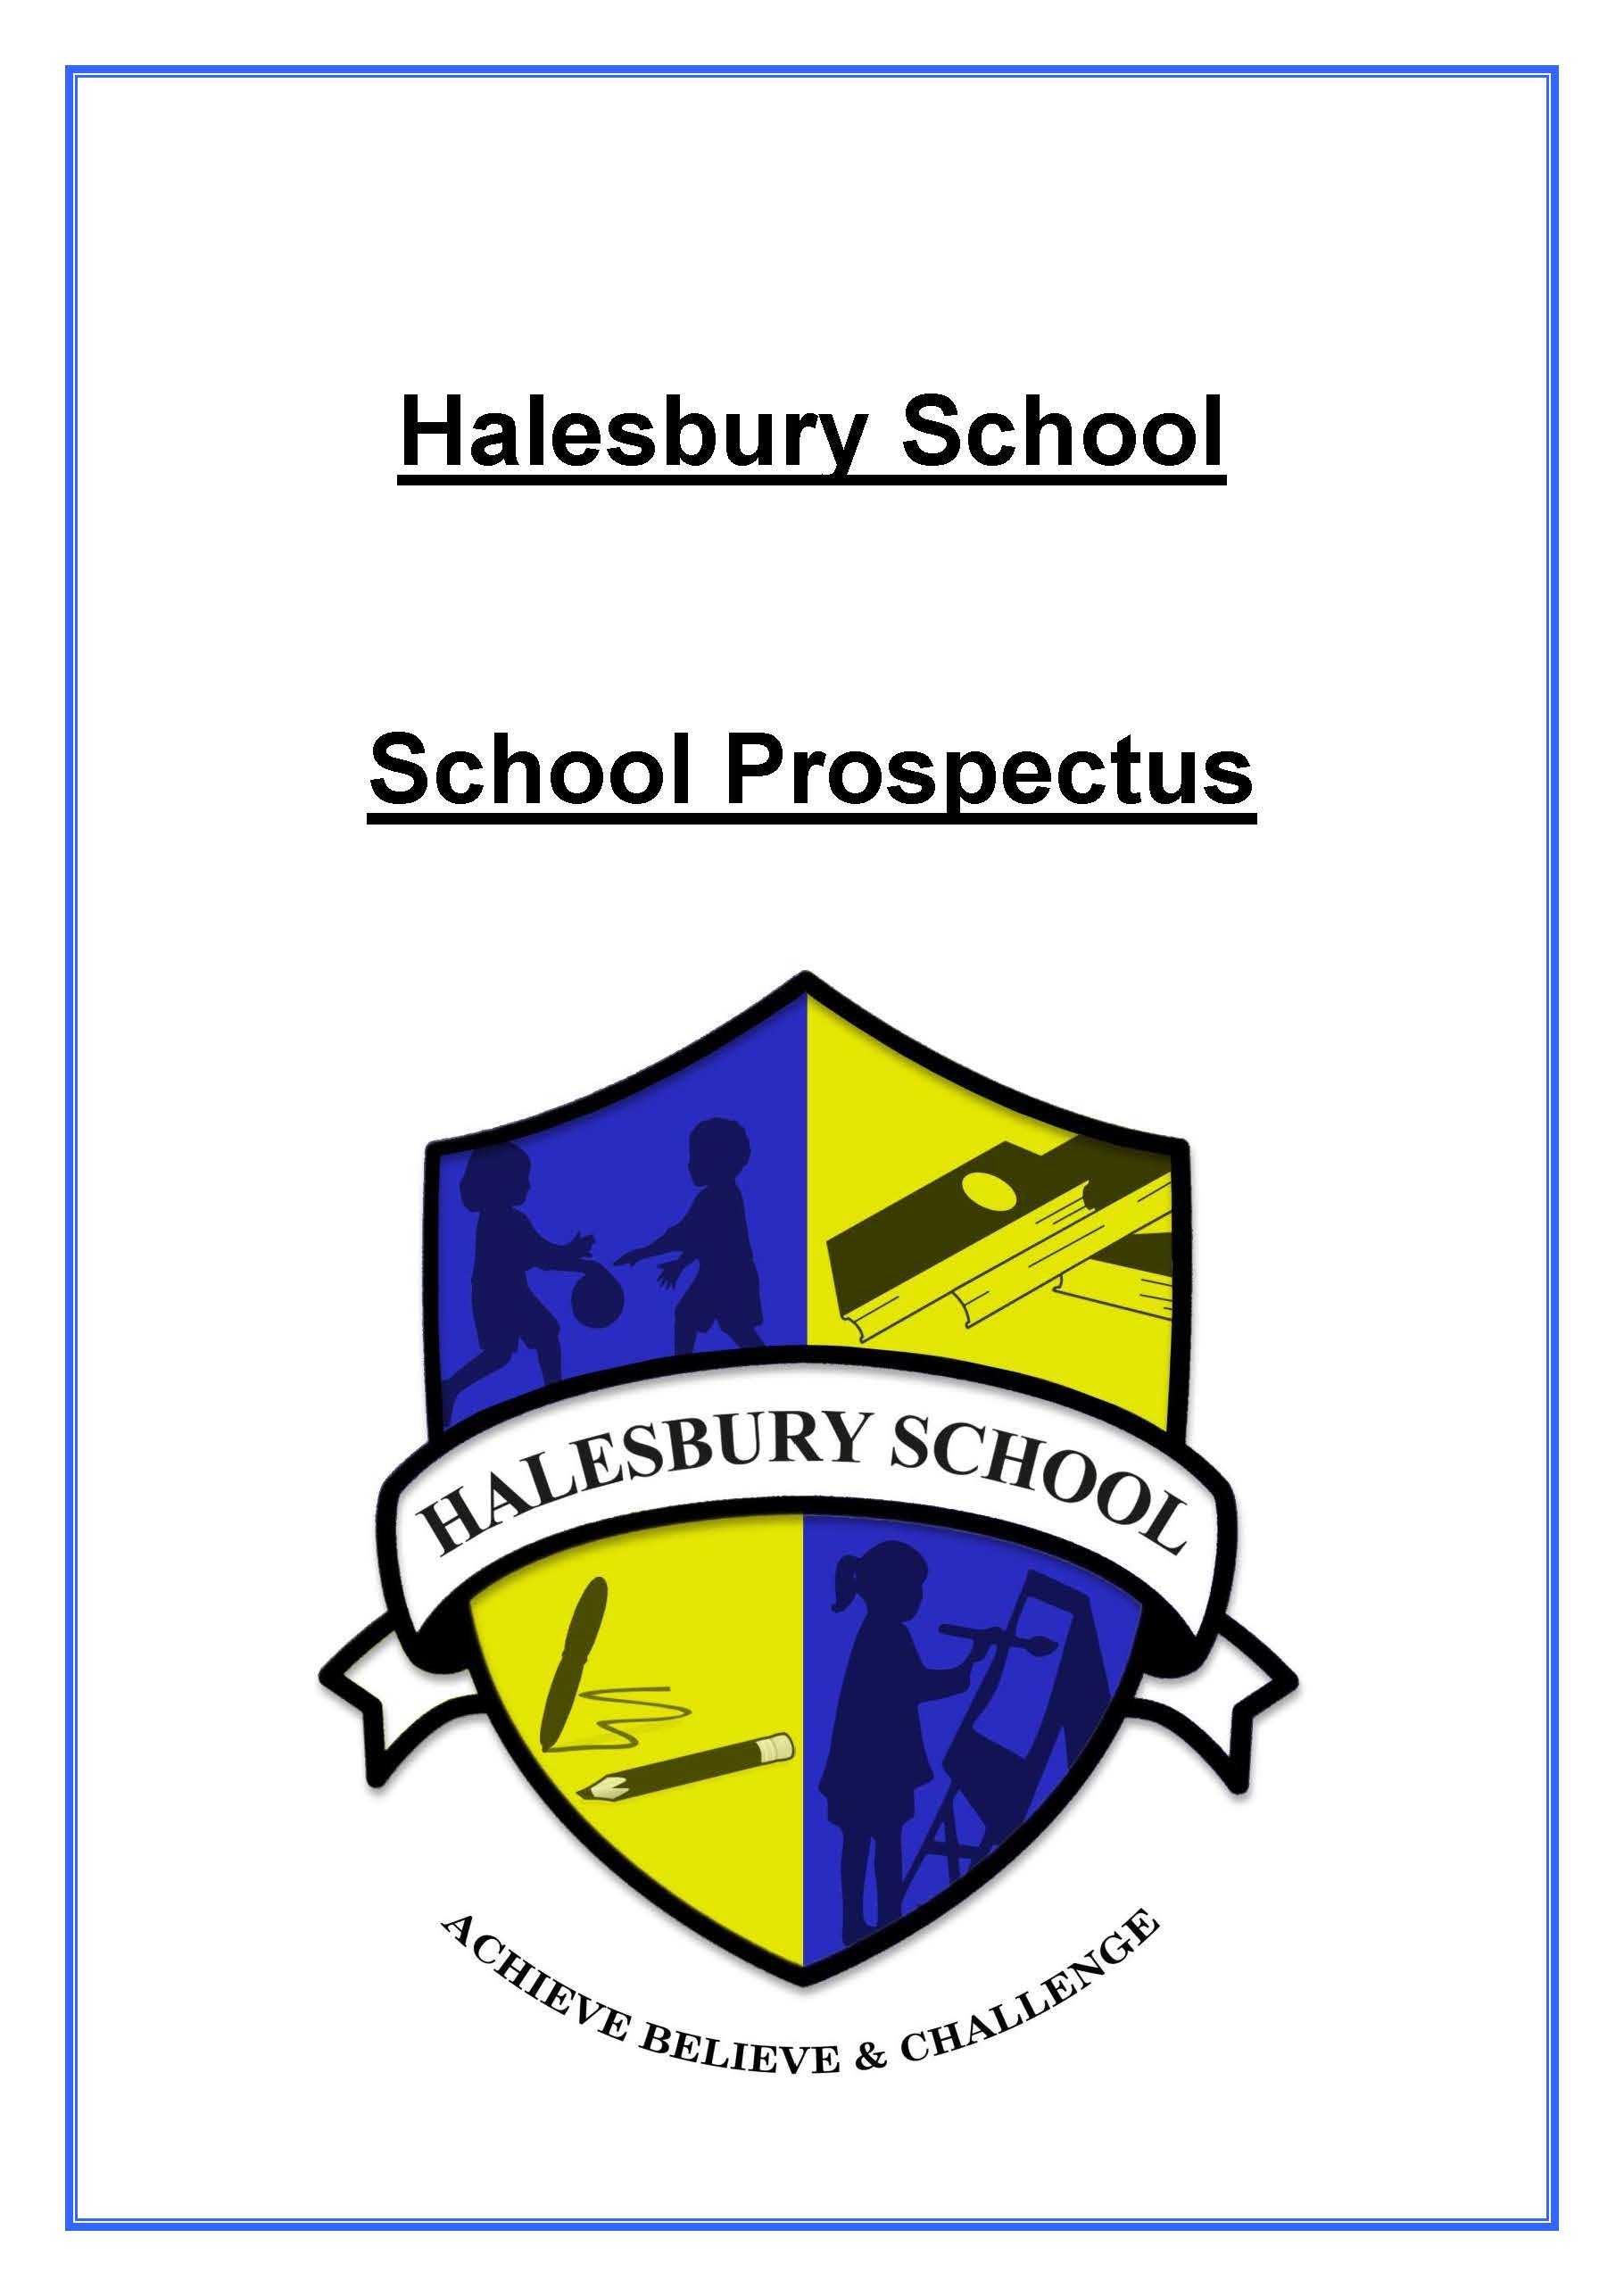 Halesbury School Prospectus 20-21